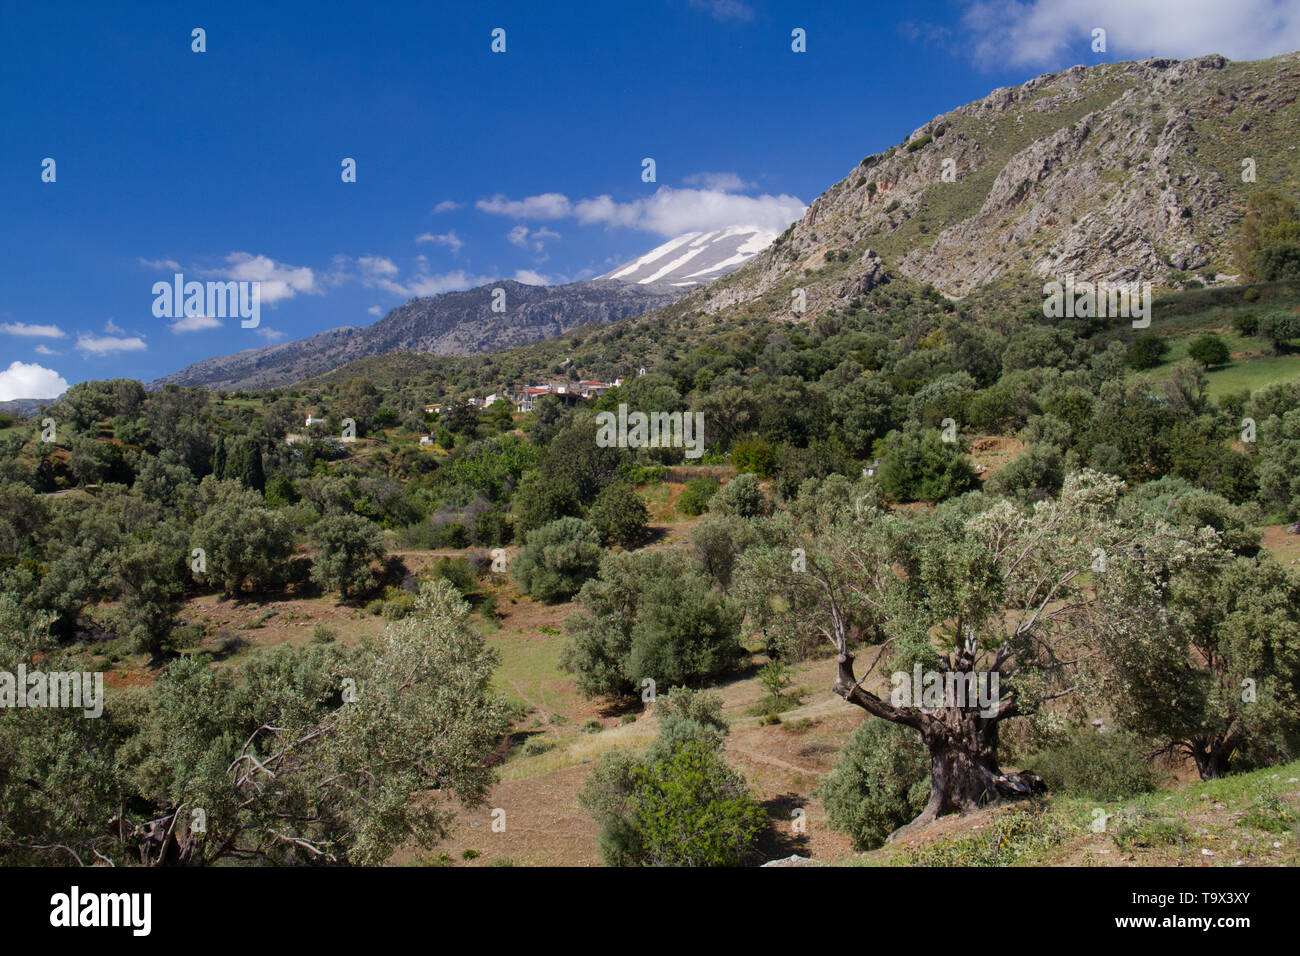 Paysage sur la Crète, Grèce : vue sur une oliveraie, au loin une montagne couverte de neige et un village de maisons blanches Banque D'Images